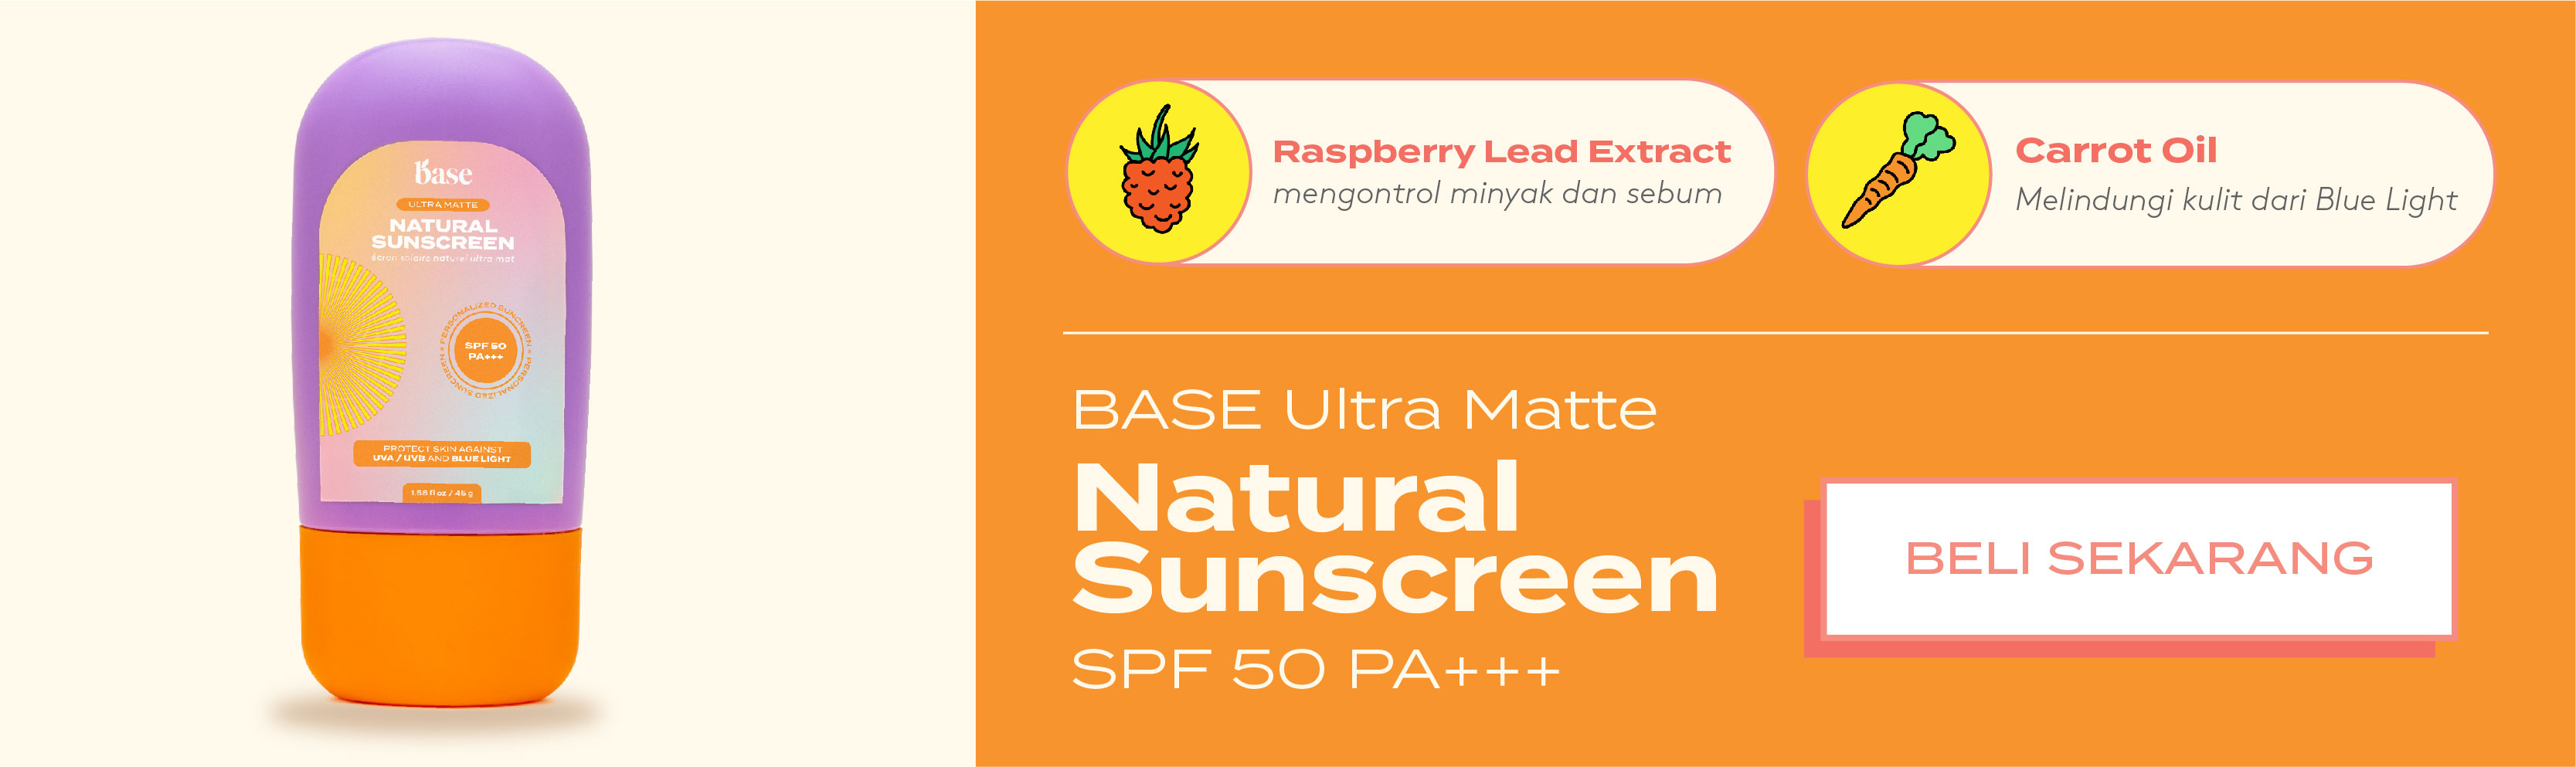 base ultra matte natural sunscreen